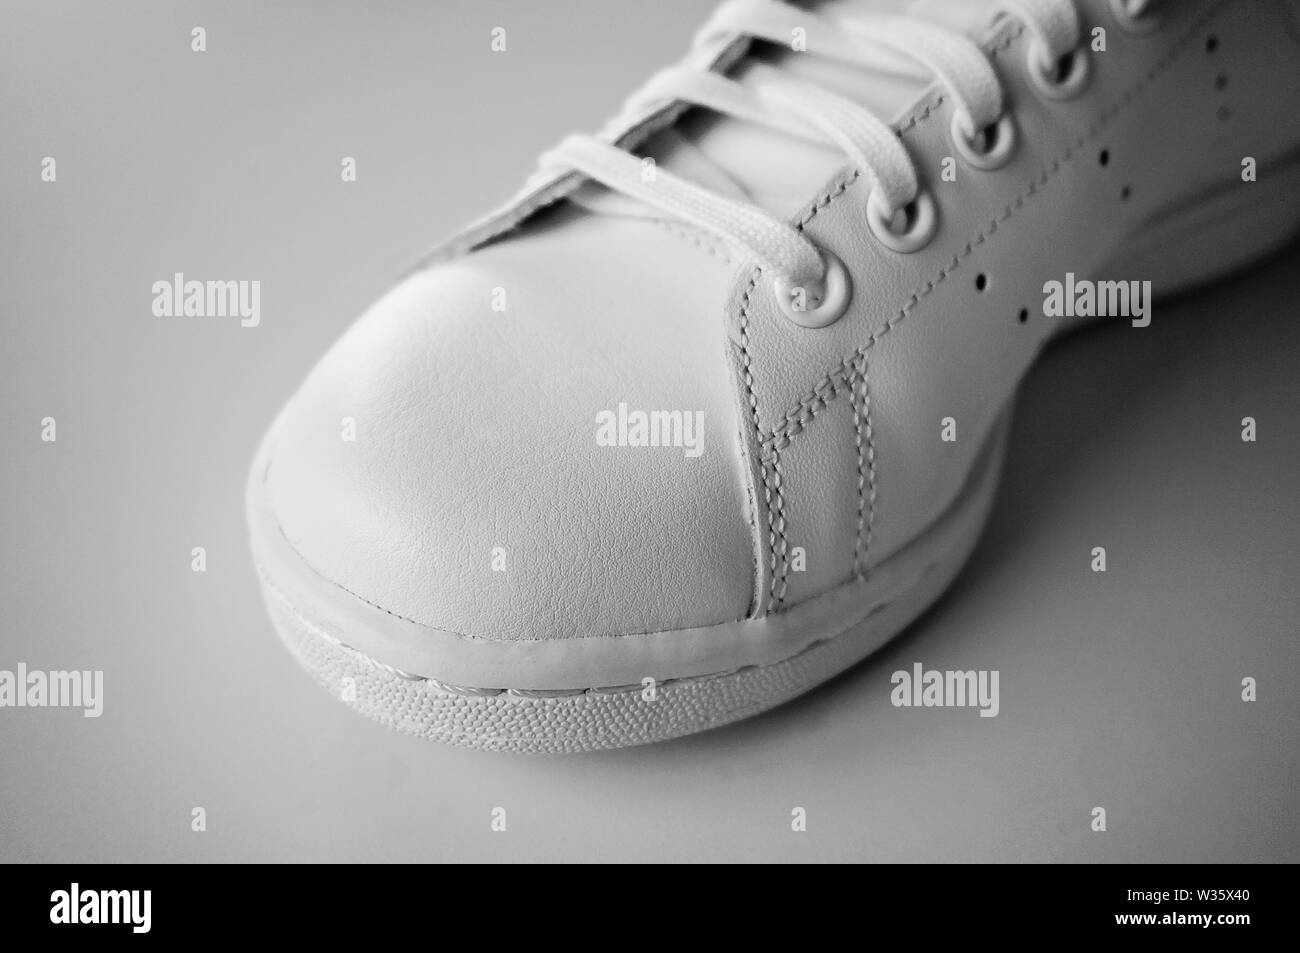 Détail de chaussures de sport blanc close up Banque D'Images